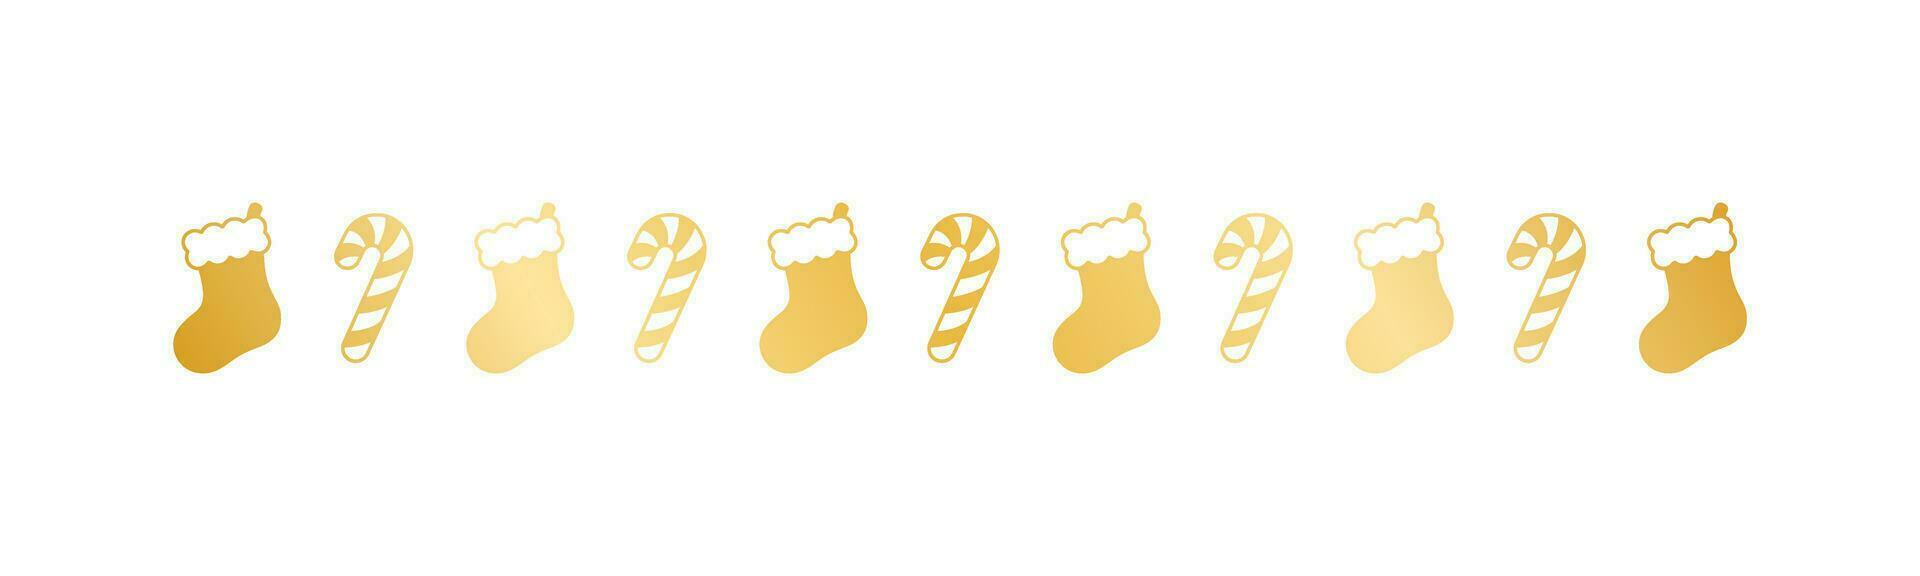 oro Natale a tema decorativo confine e testo divisore, Natale calza e caramella canna modello silhouette. vettore illustrazione.